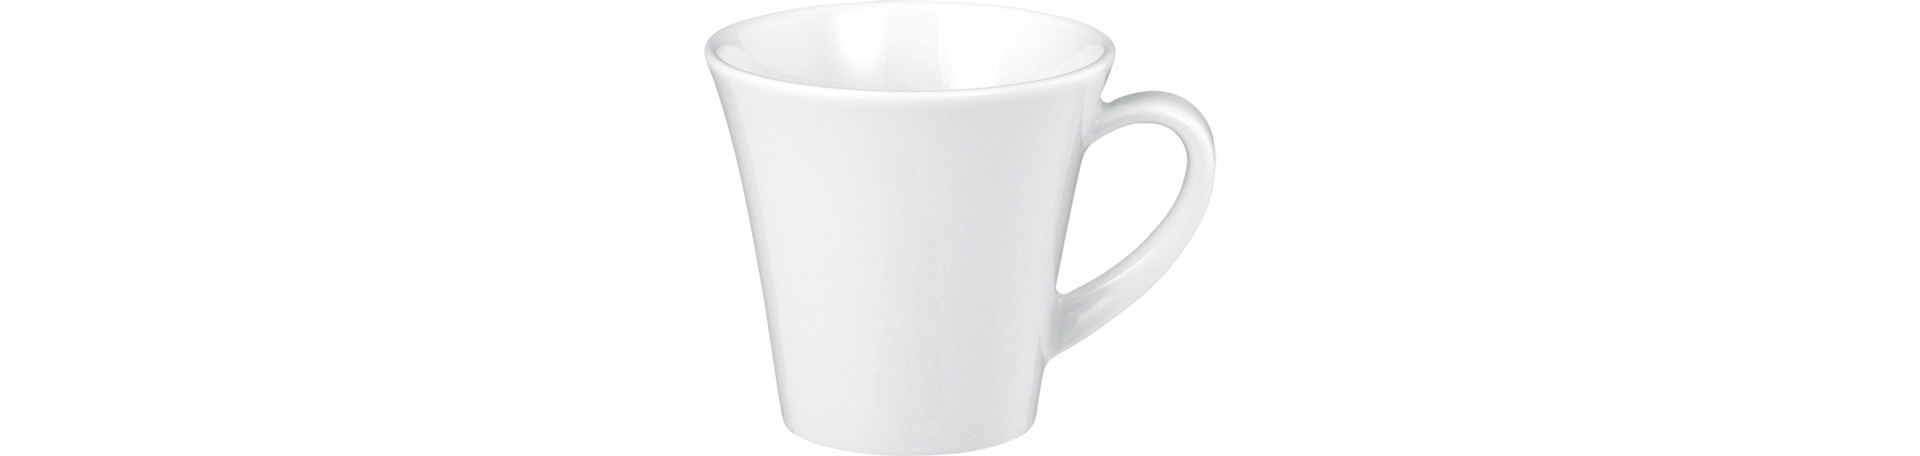 Kaffeetasse 82 mm / 0,20 l weiß uni -5242